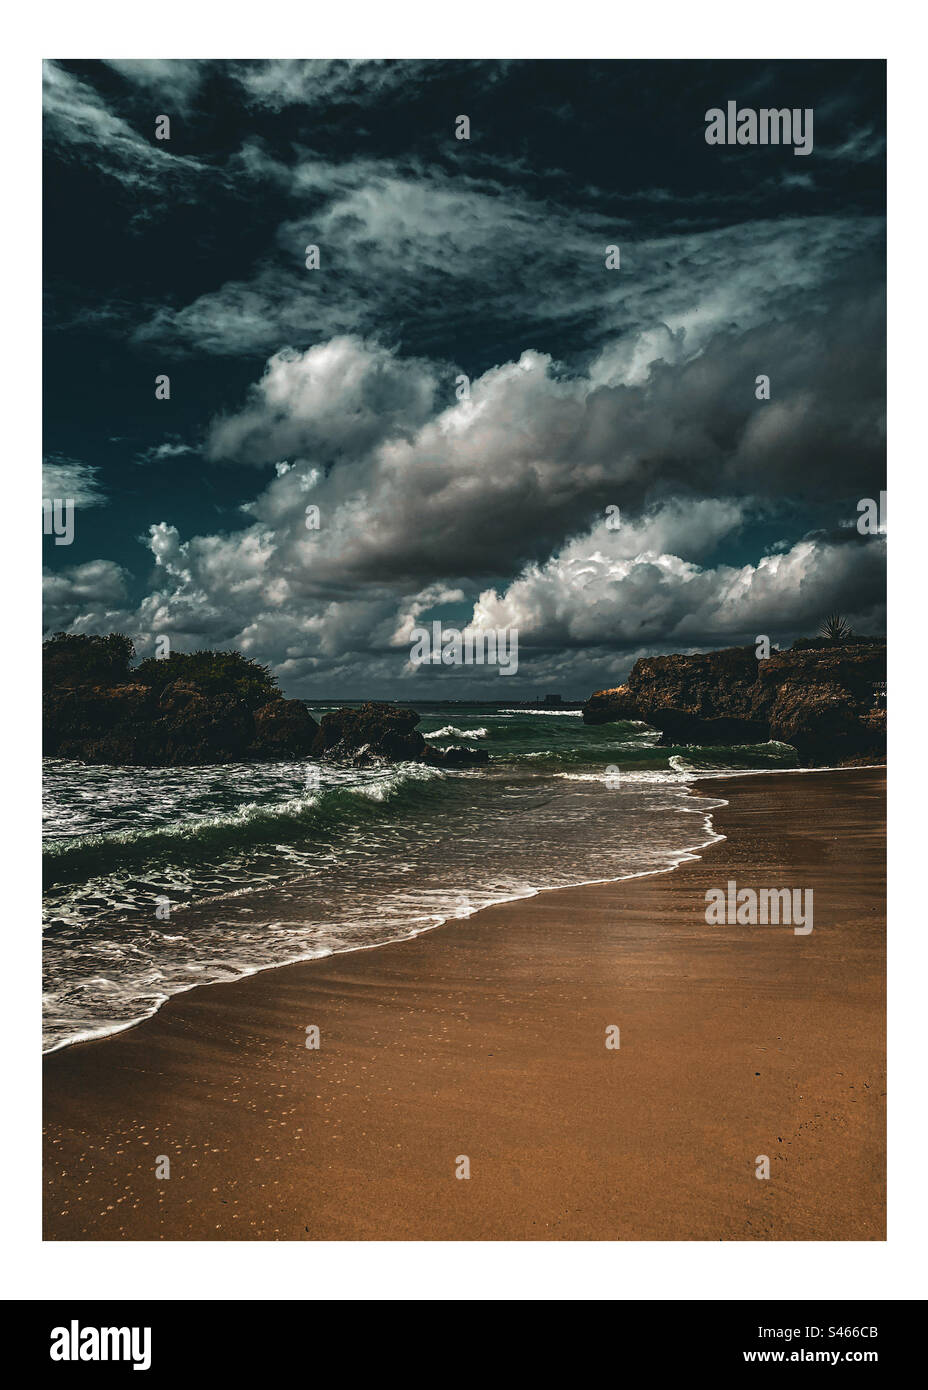 Une scène de plage nocturne dramatique avec des vagues et des nuages. Plage de sable sombre la nuit avec des vagues et un ciel nuageux dramatique lourd, Banque D'Images